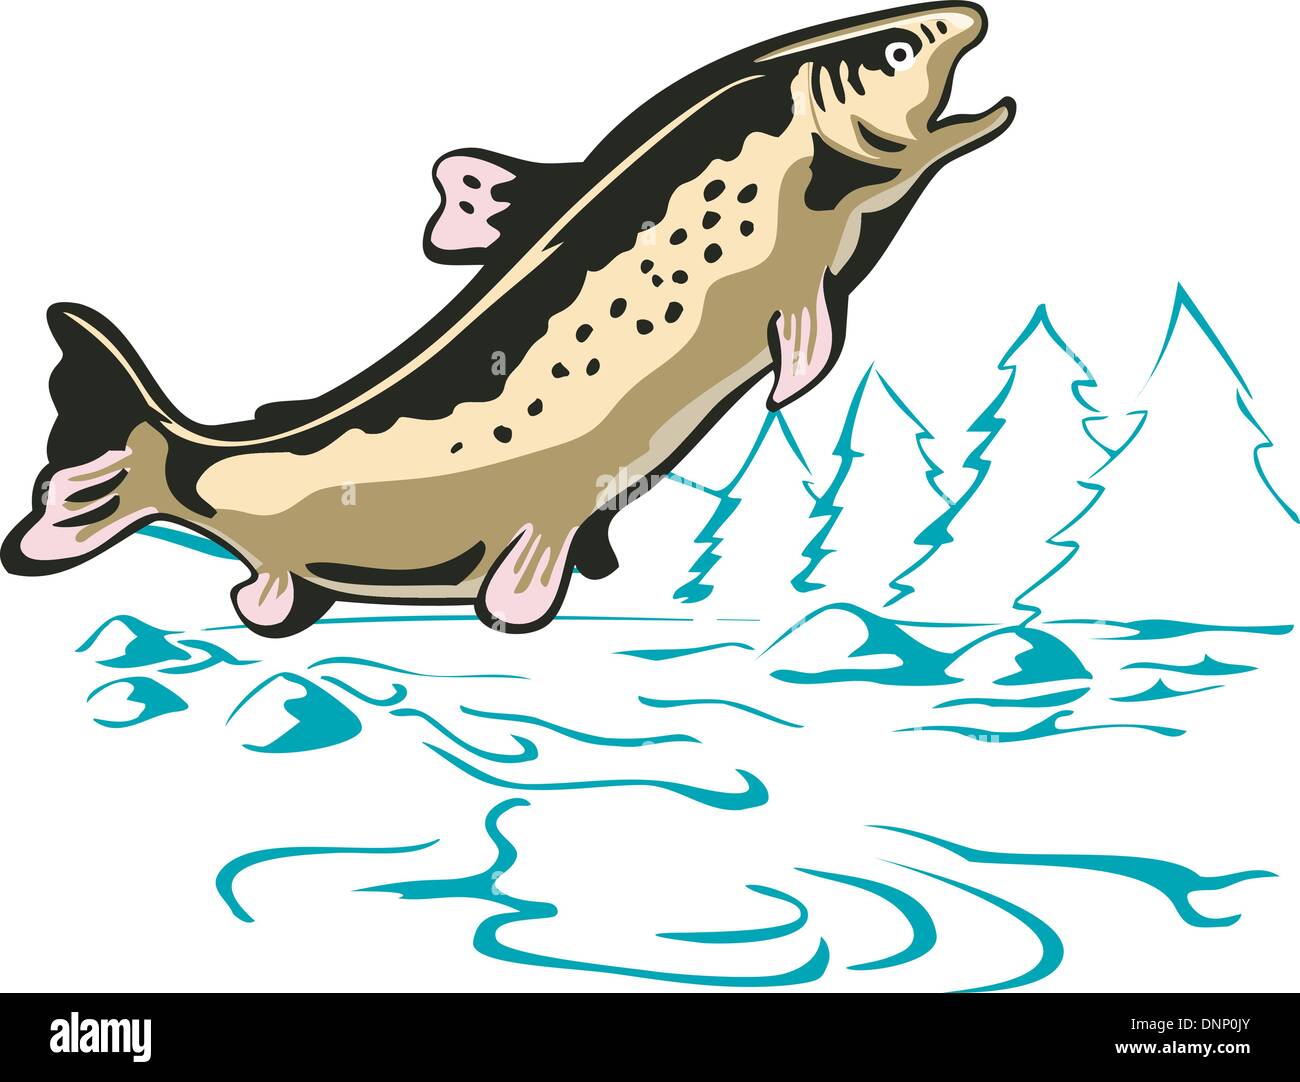 Illustrazione di un pesce trote saltando visto dal lato fatto in stile retrò. Illustrazione Vettoriale